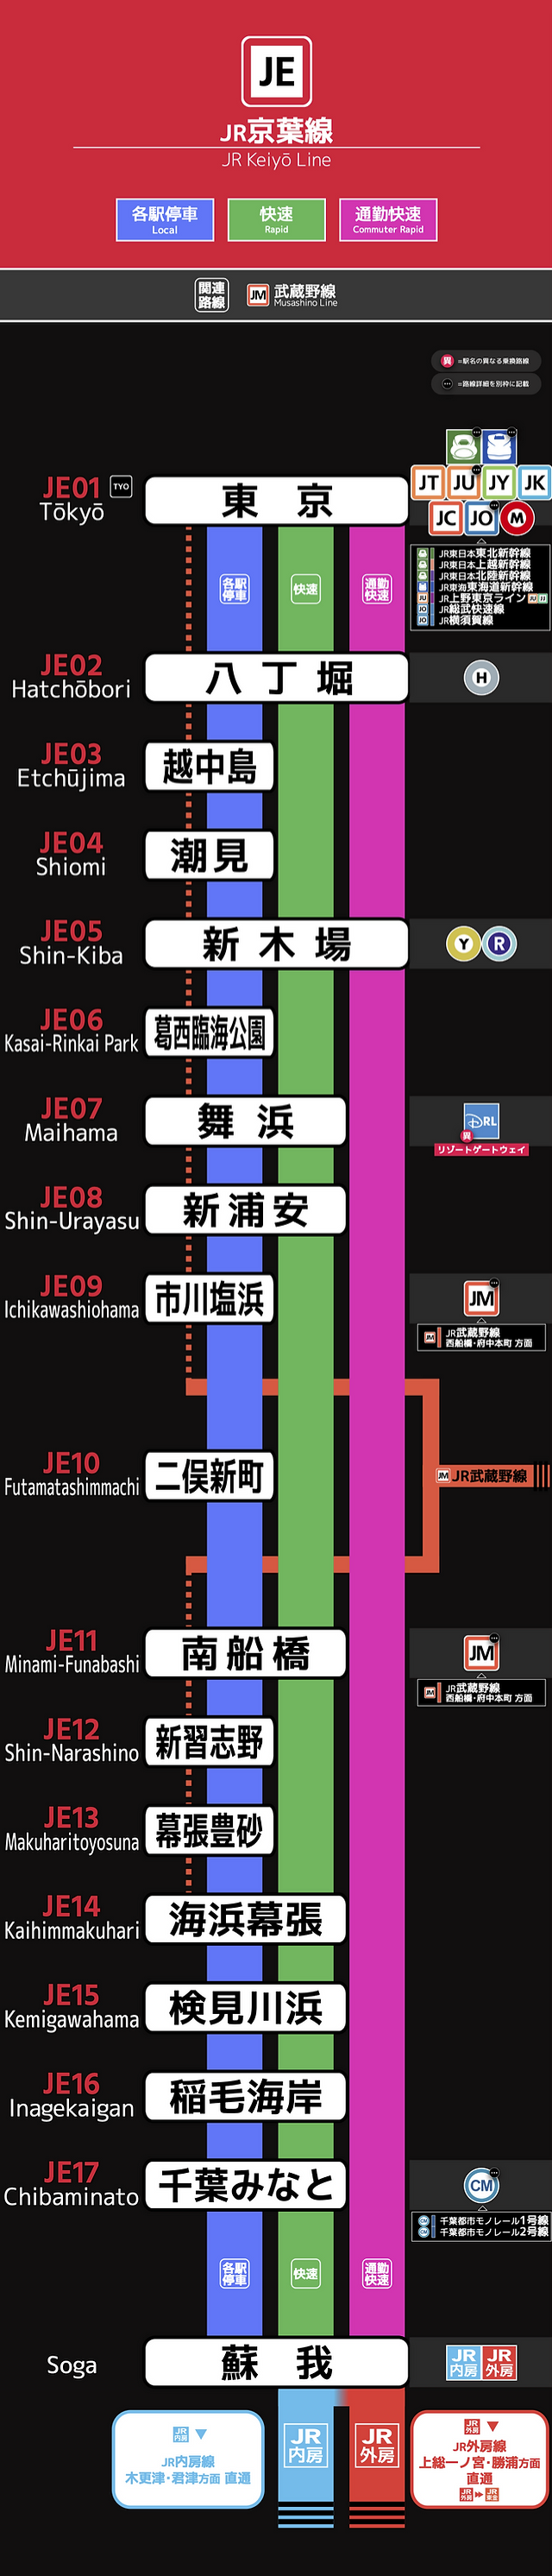 【驚報】京葉線の『通勤快速廃止』、想像の334倍くらいエグい暴挙だった😲 (画像)  [312375913]\n_1